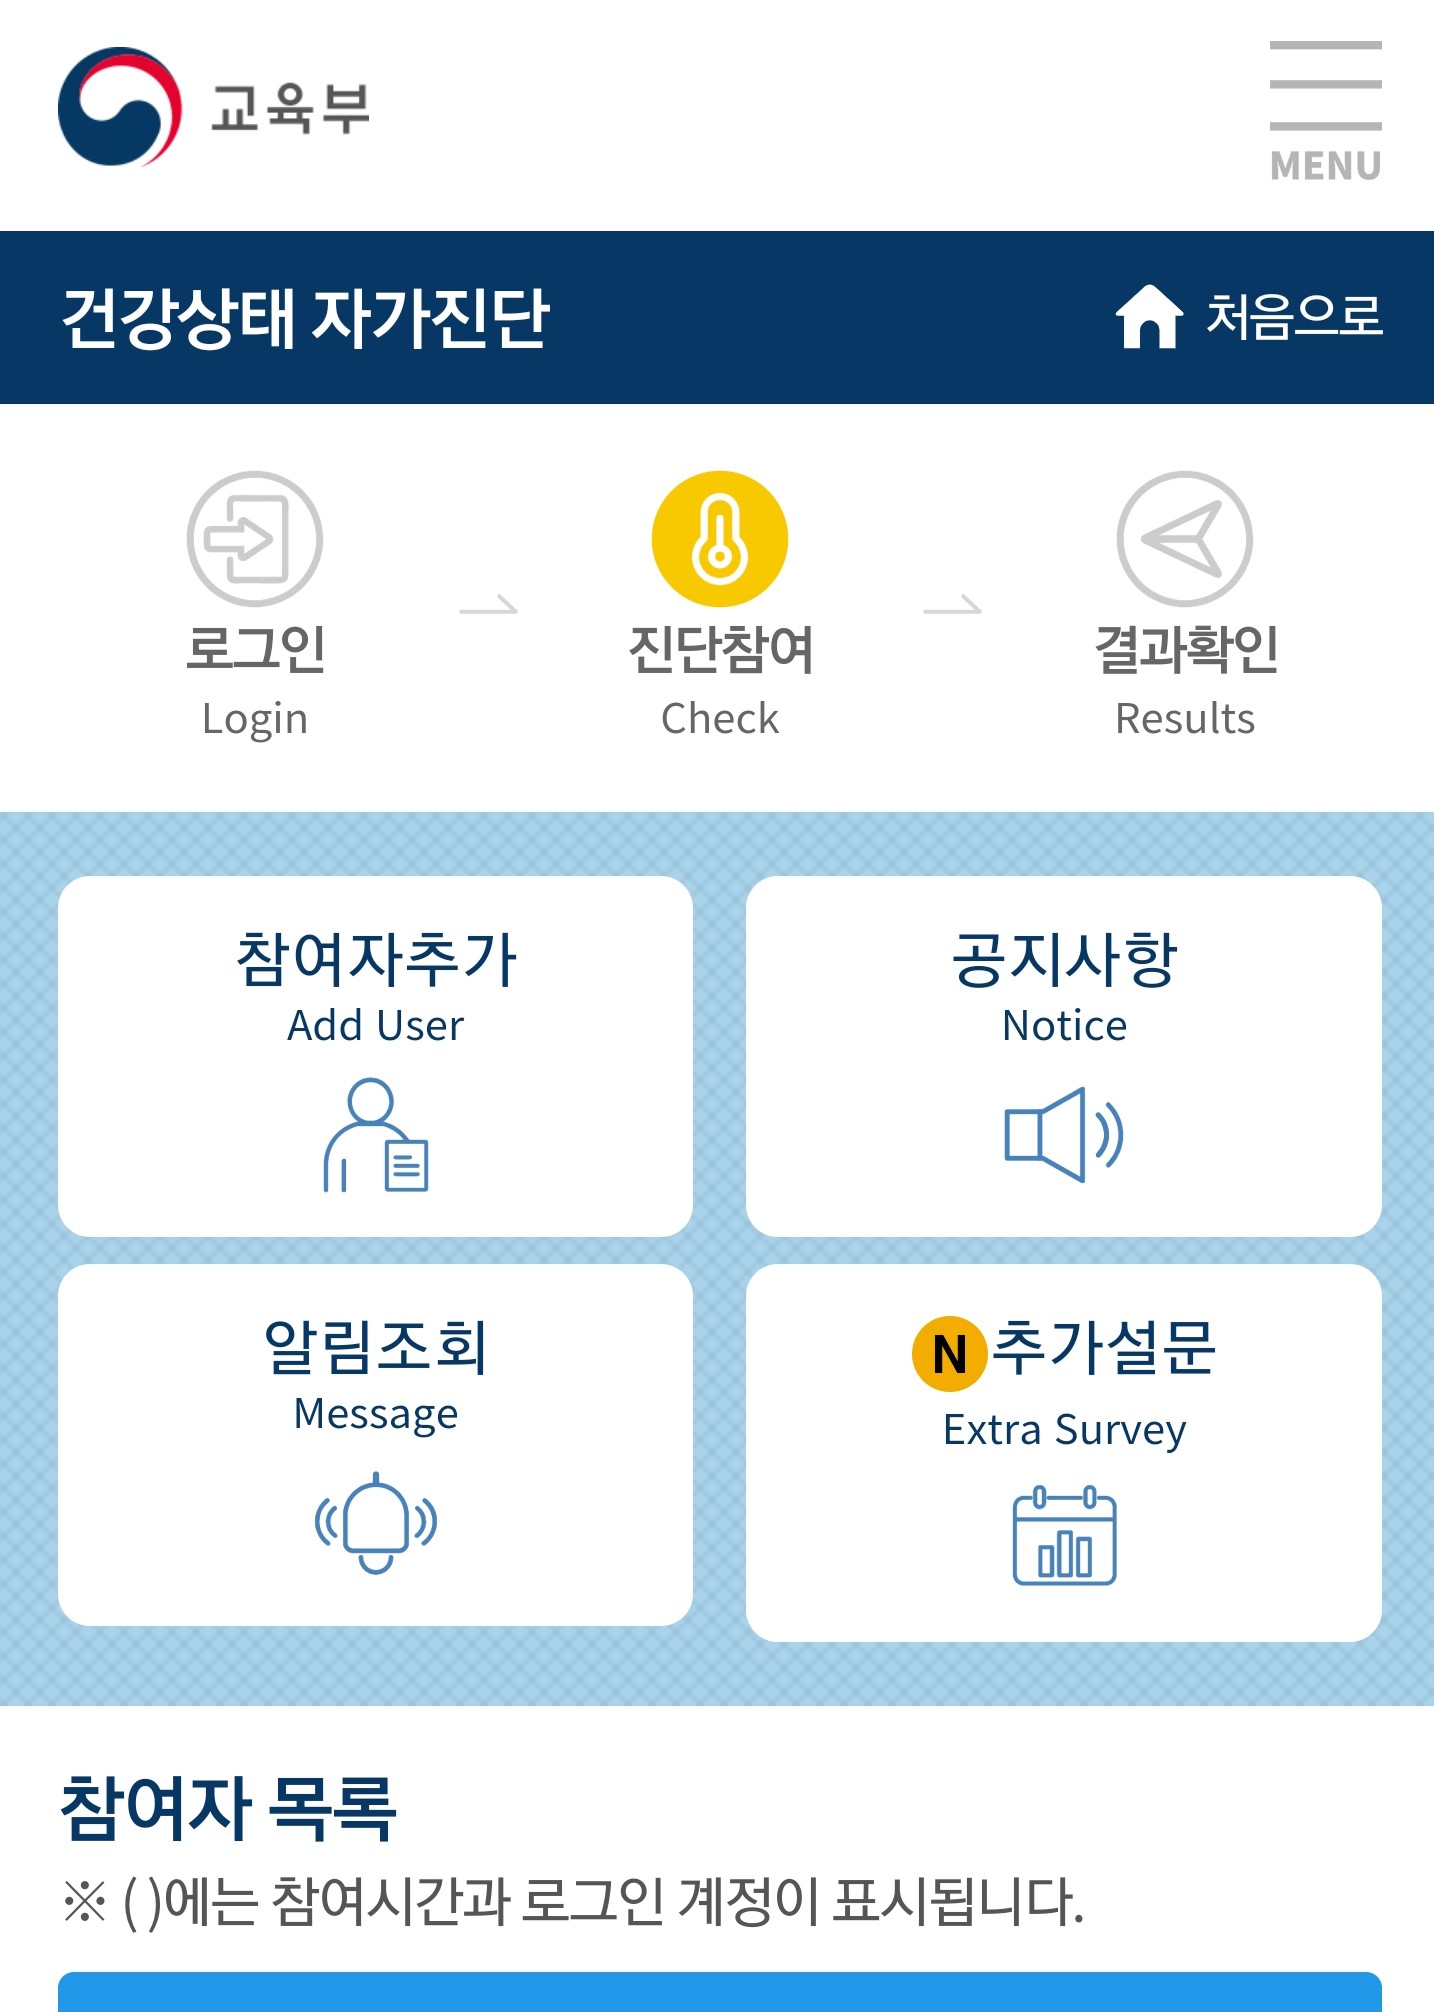 건강상태 자가진단 앱-추가설문